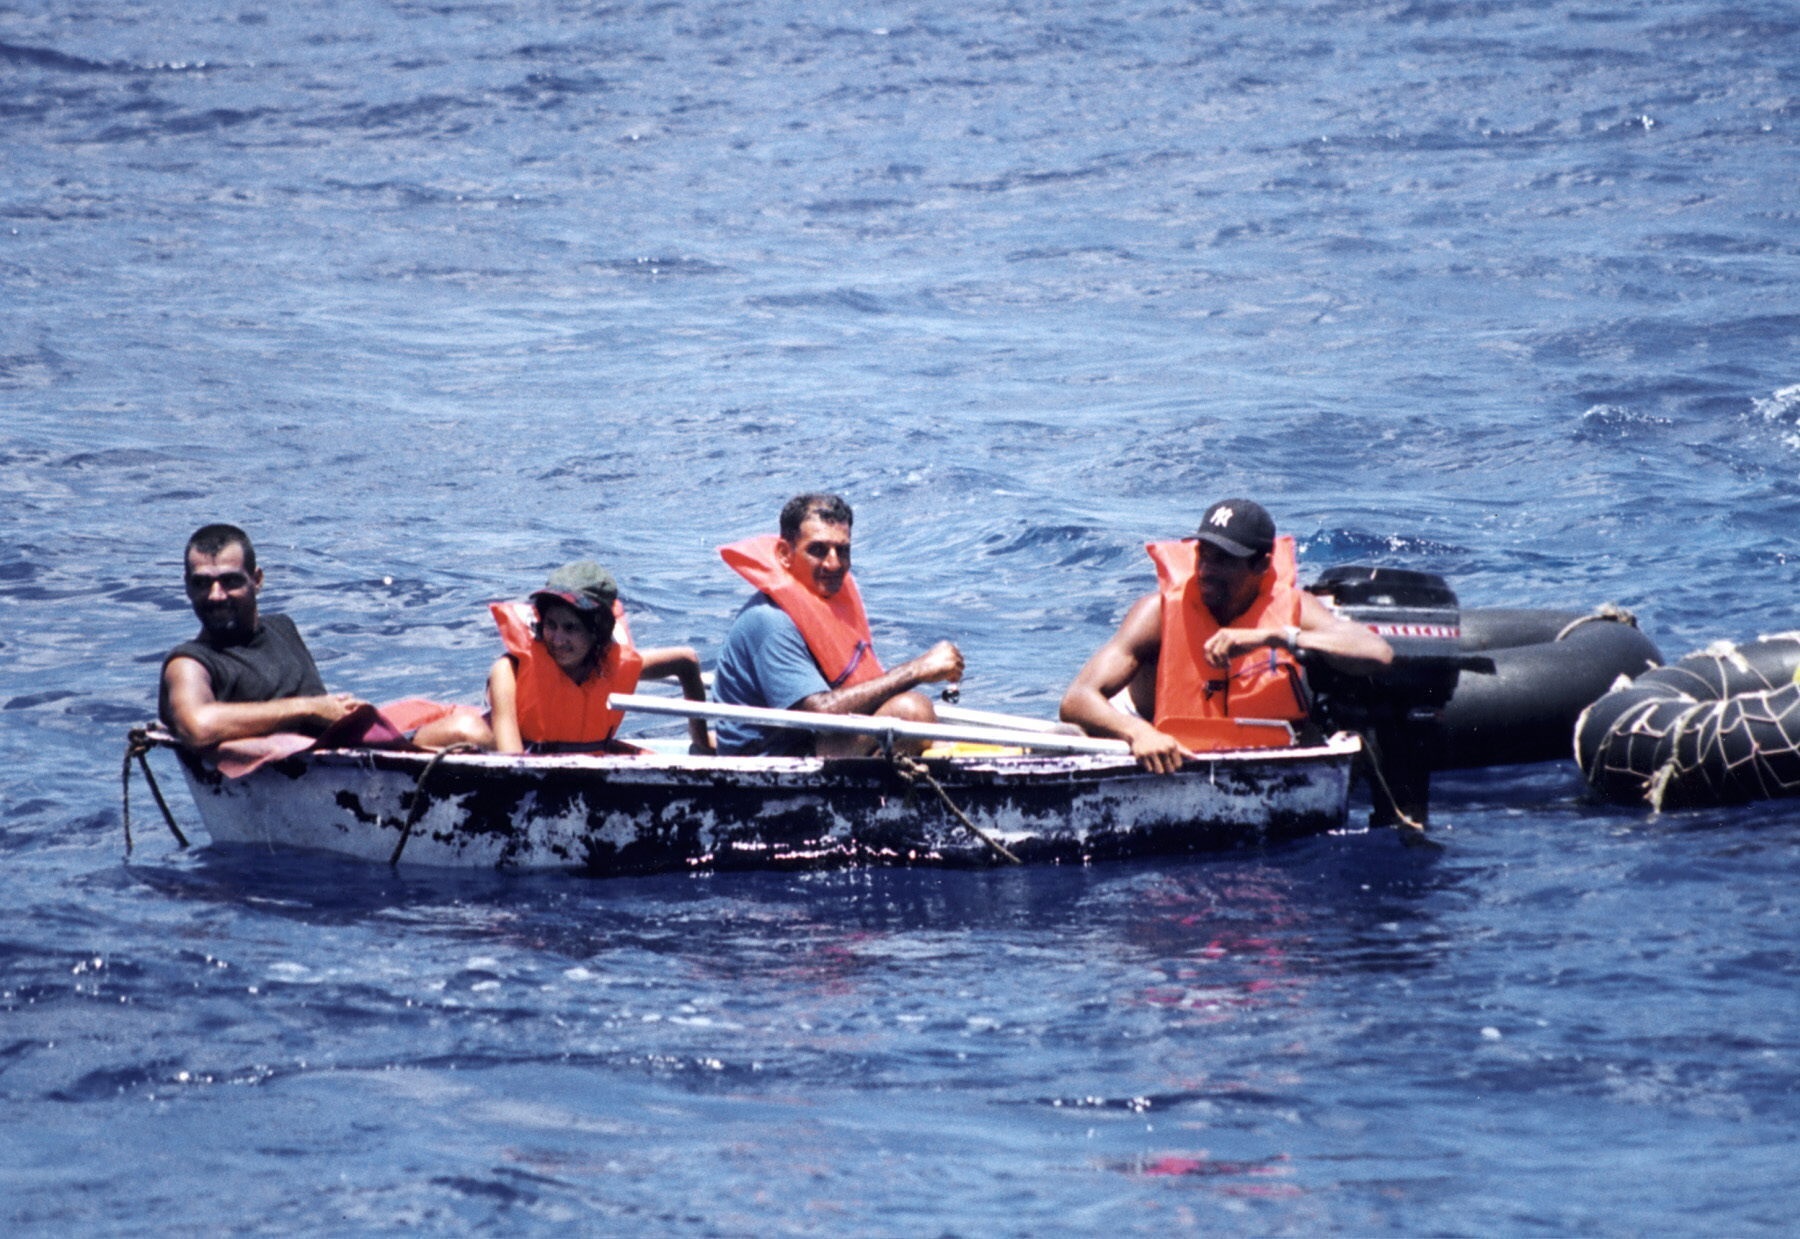 Foto de archivo de un grupo de inmigrantes cubanos llegando a las costas de Florida en un bote. EFE/Archivo
